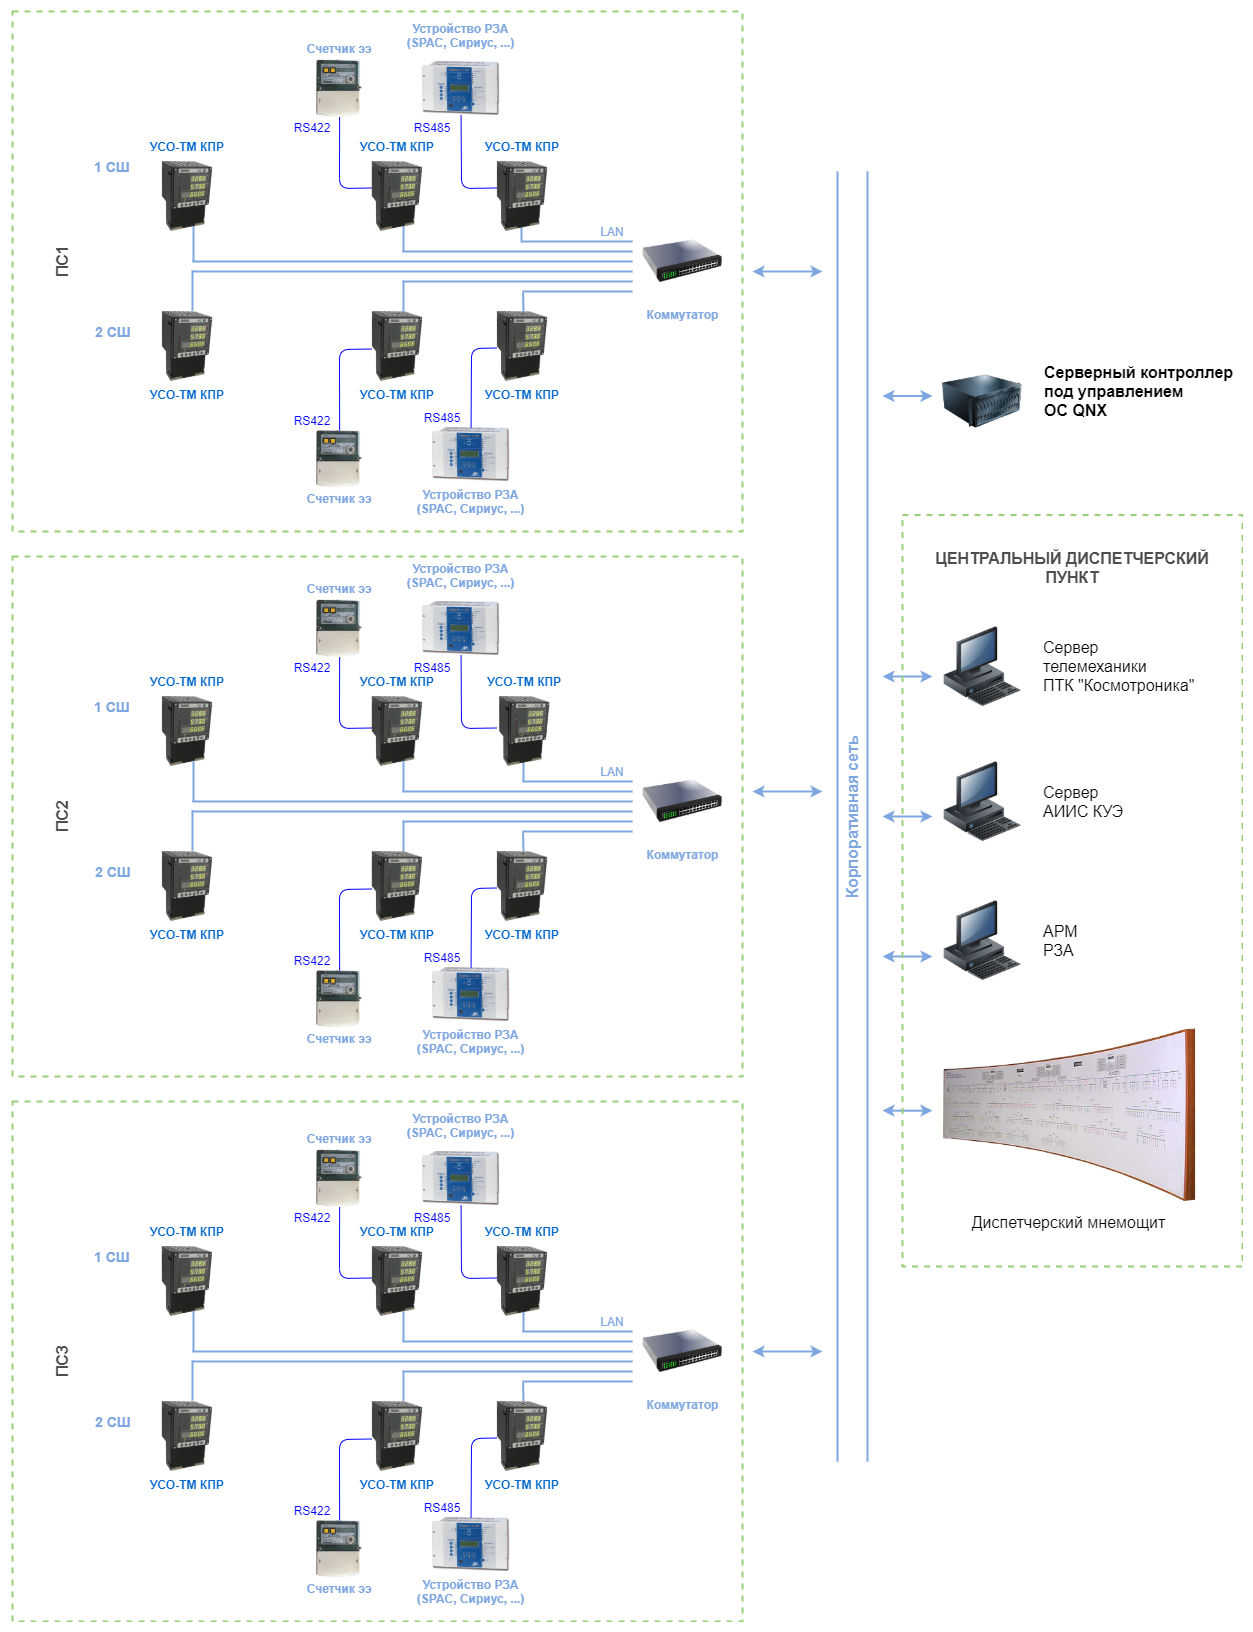 Рисунок 8. Структурная схема системы телемеханики нескольких подстанций электроснабжения с единым контроллером в центральной диспетчерской